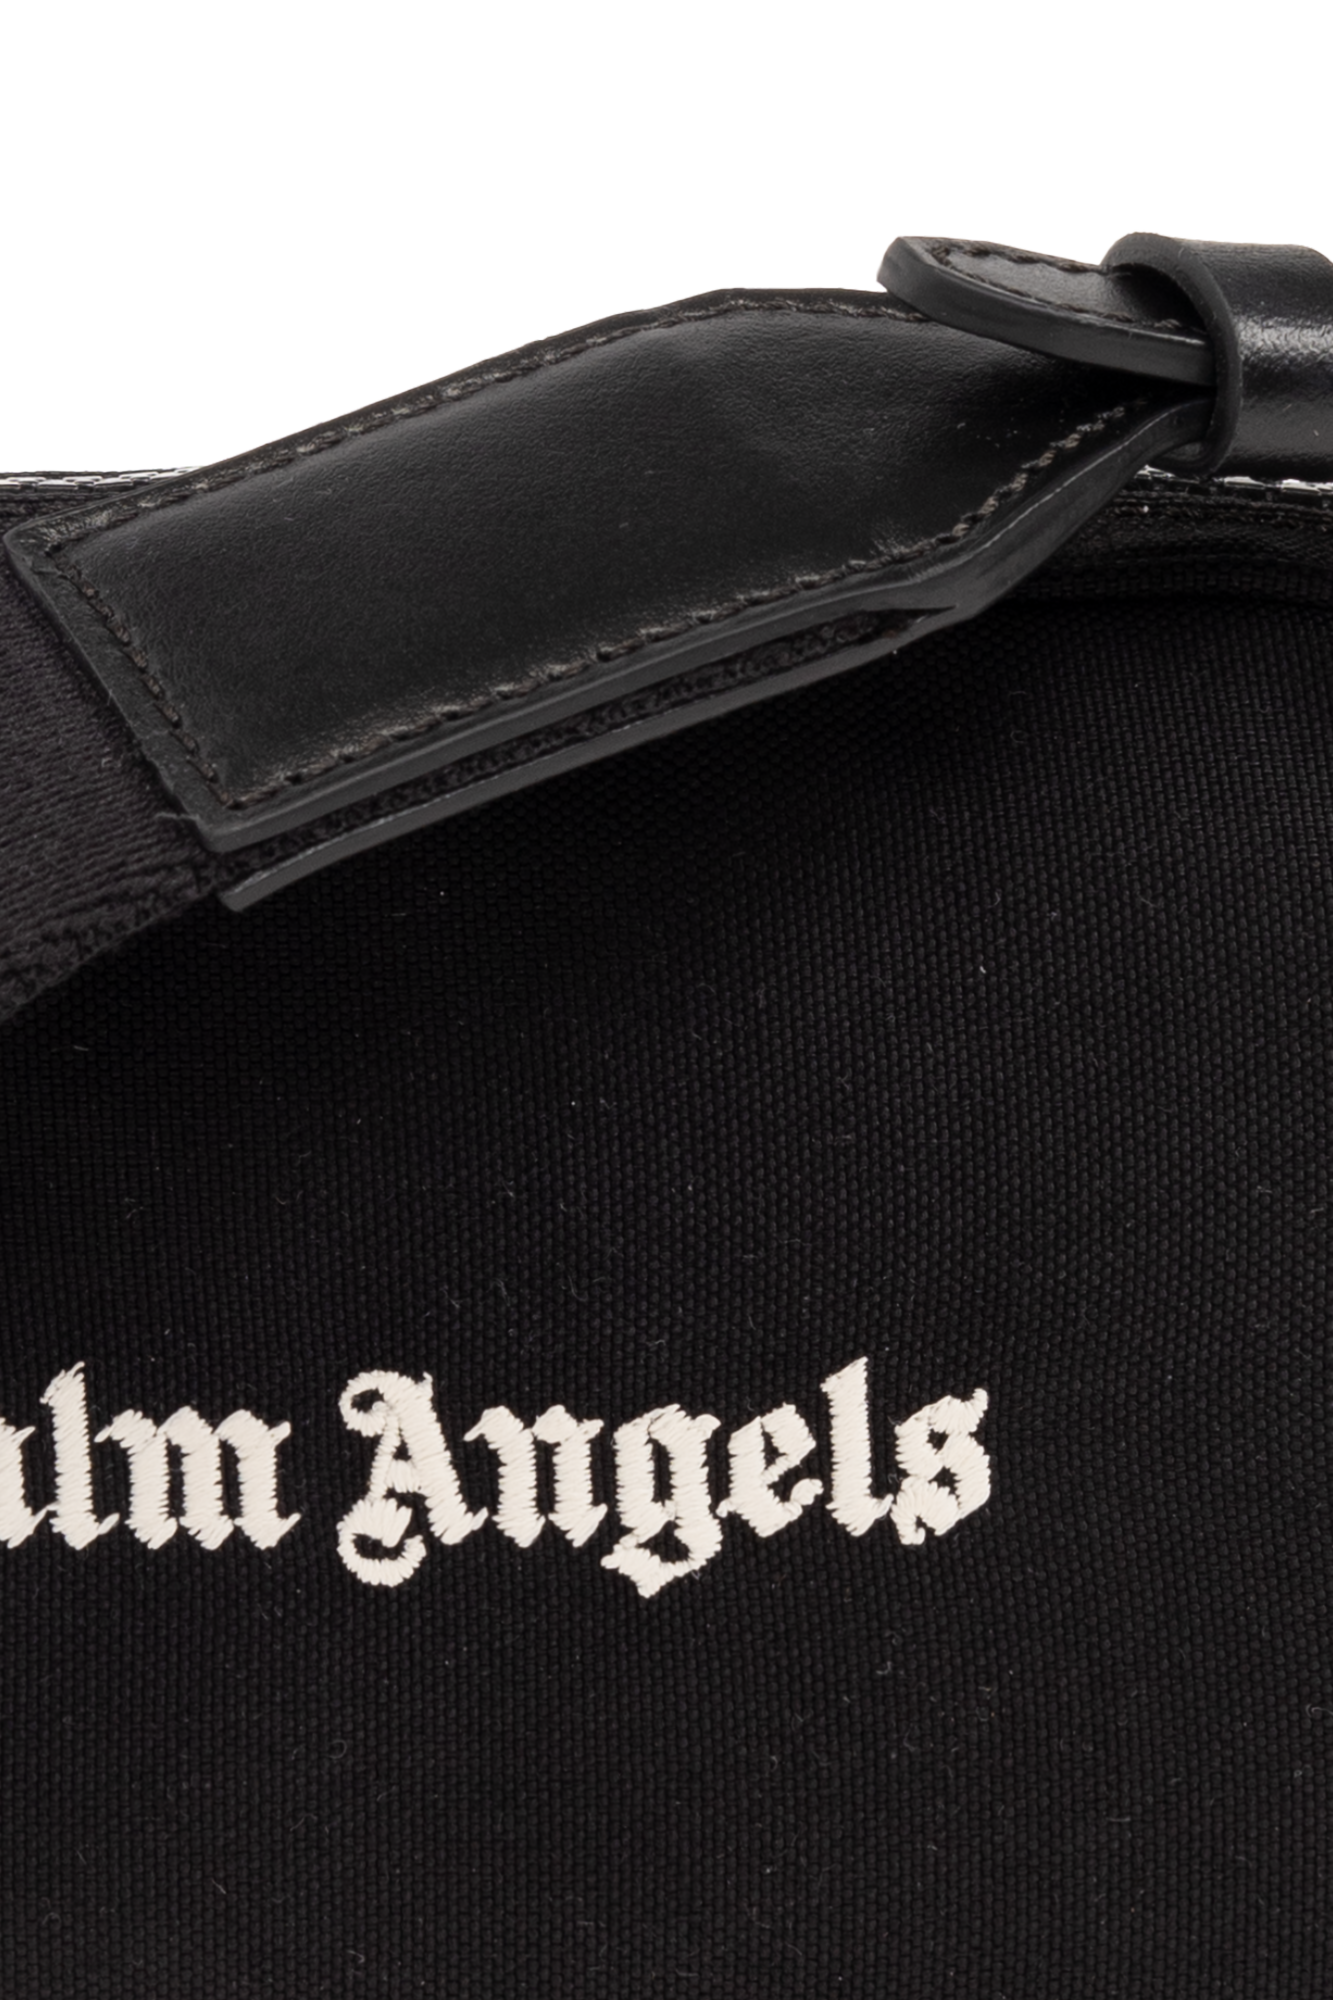 Palm Angels Shoulder bag with logo